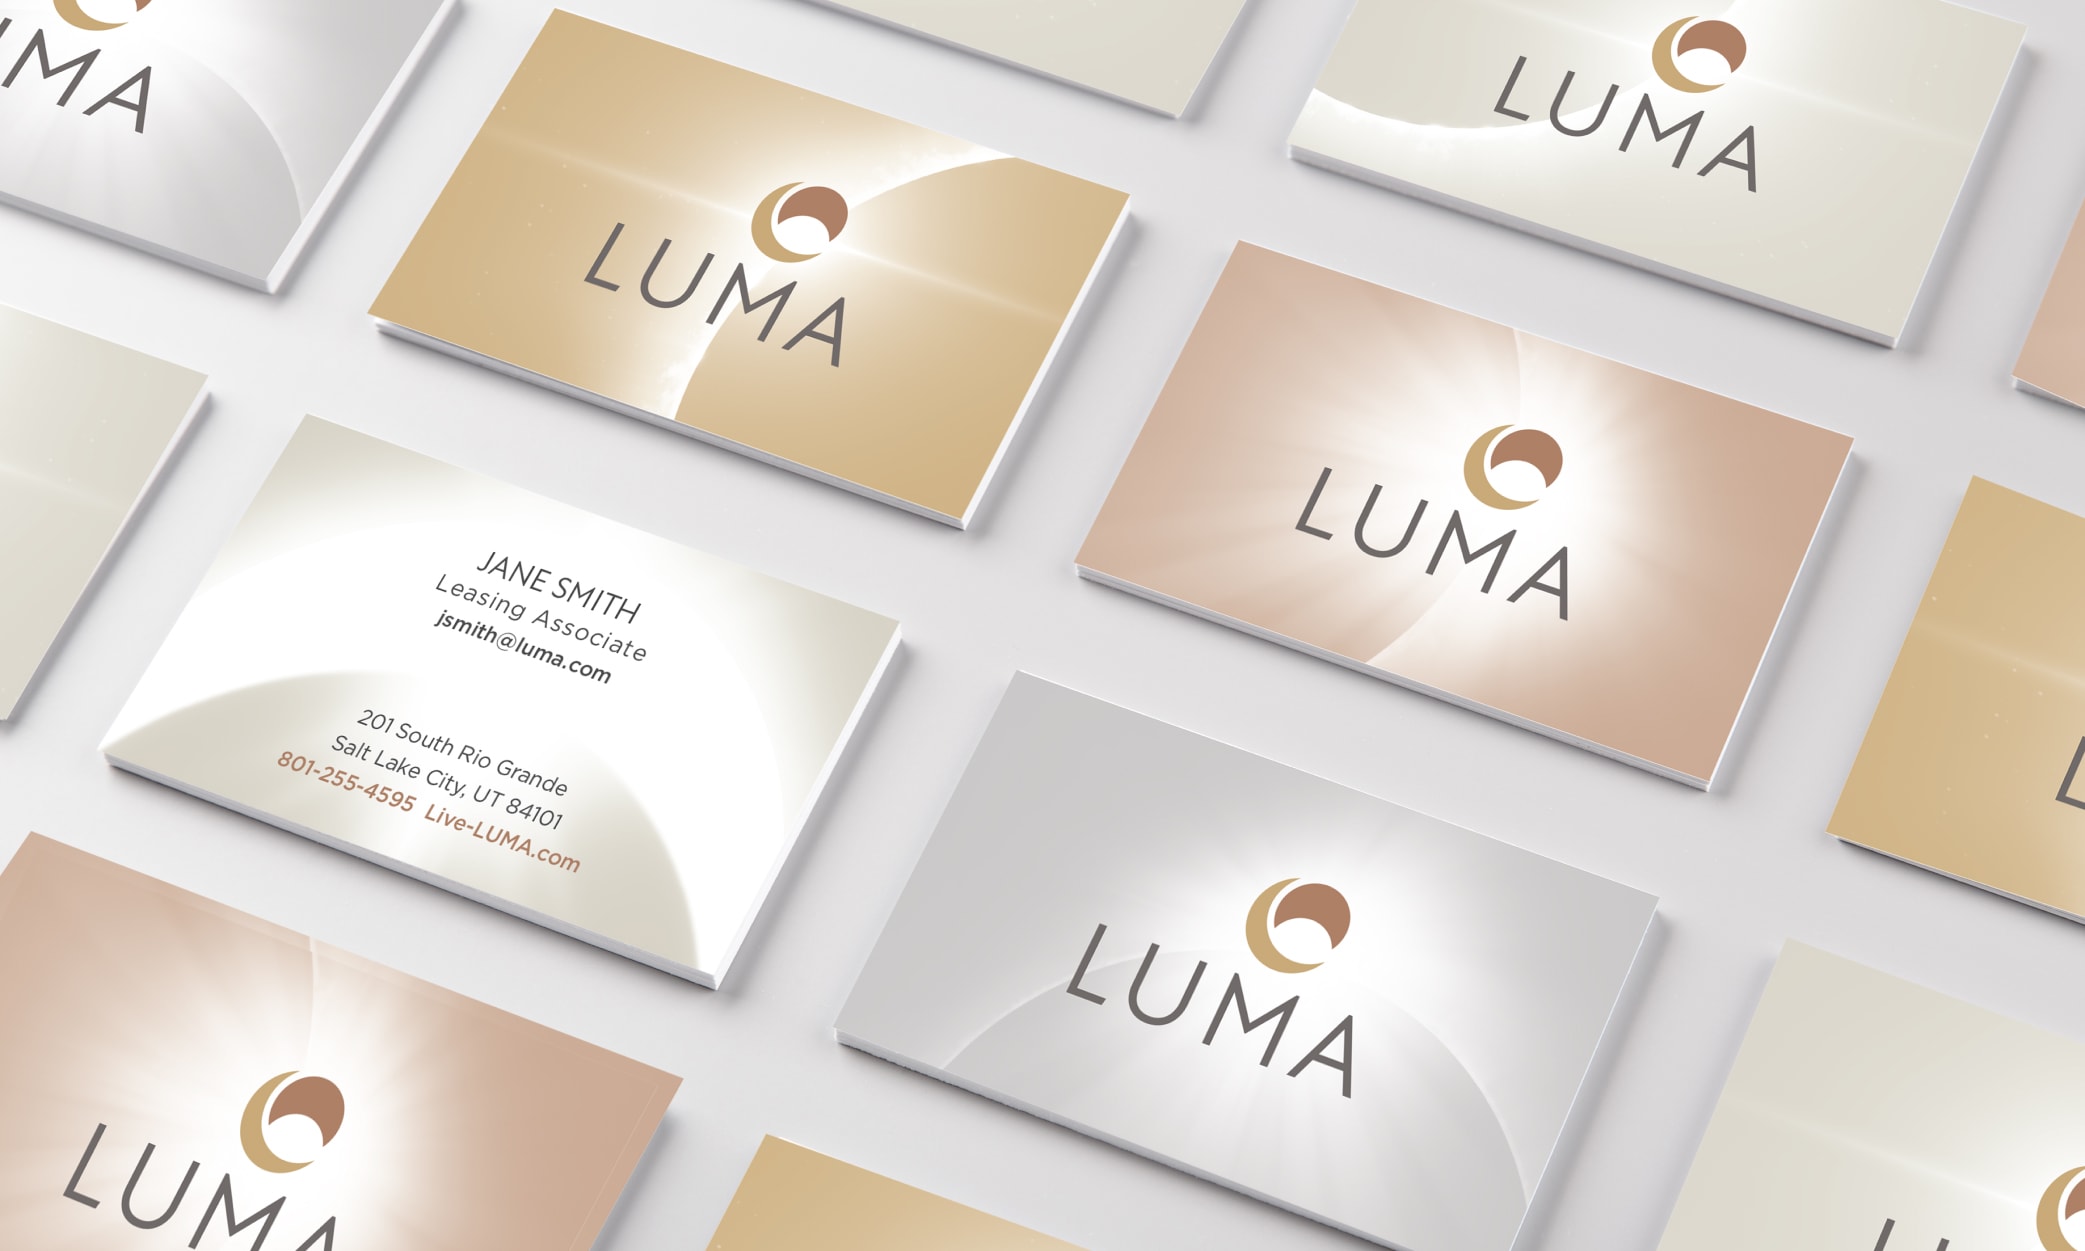 An array of LUMA business cards